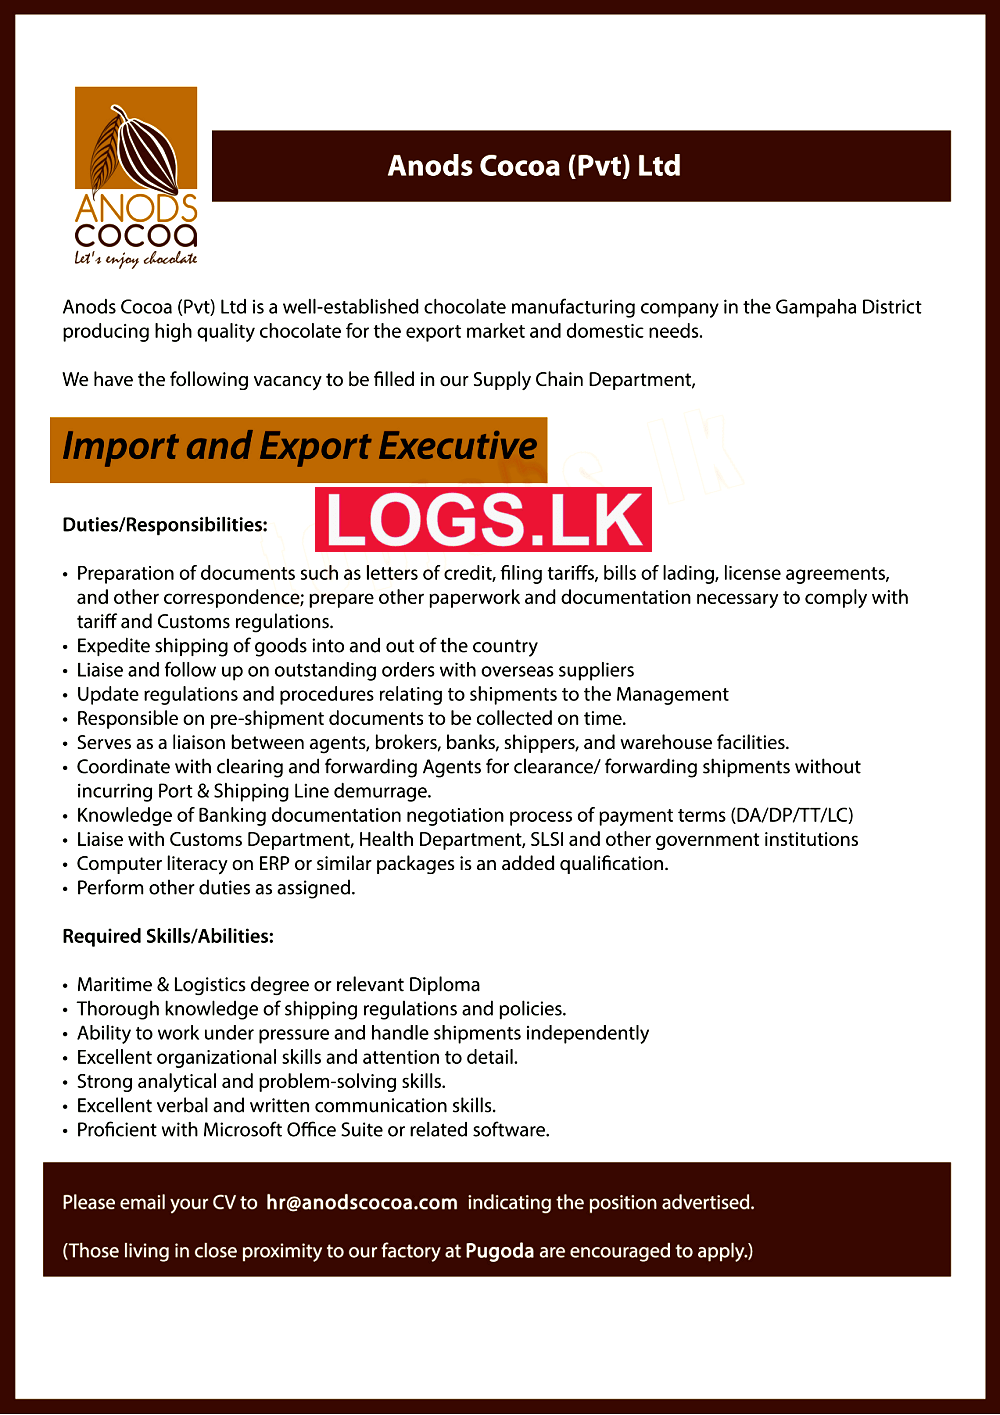 Import and Export Executive Vacancy in Anods Cocoa (Pvt) Ltd Sri Lanka Job Vacancies